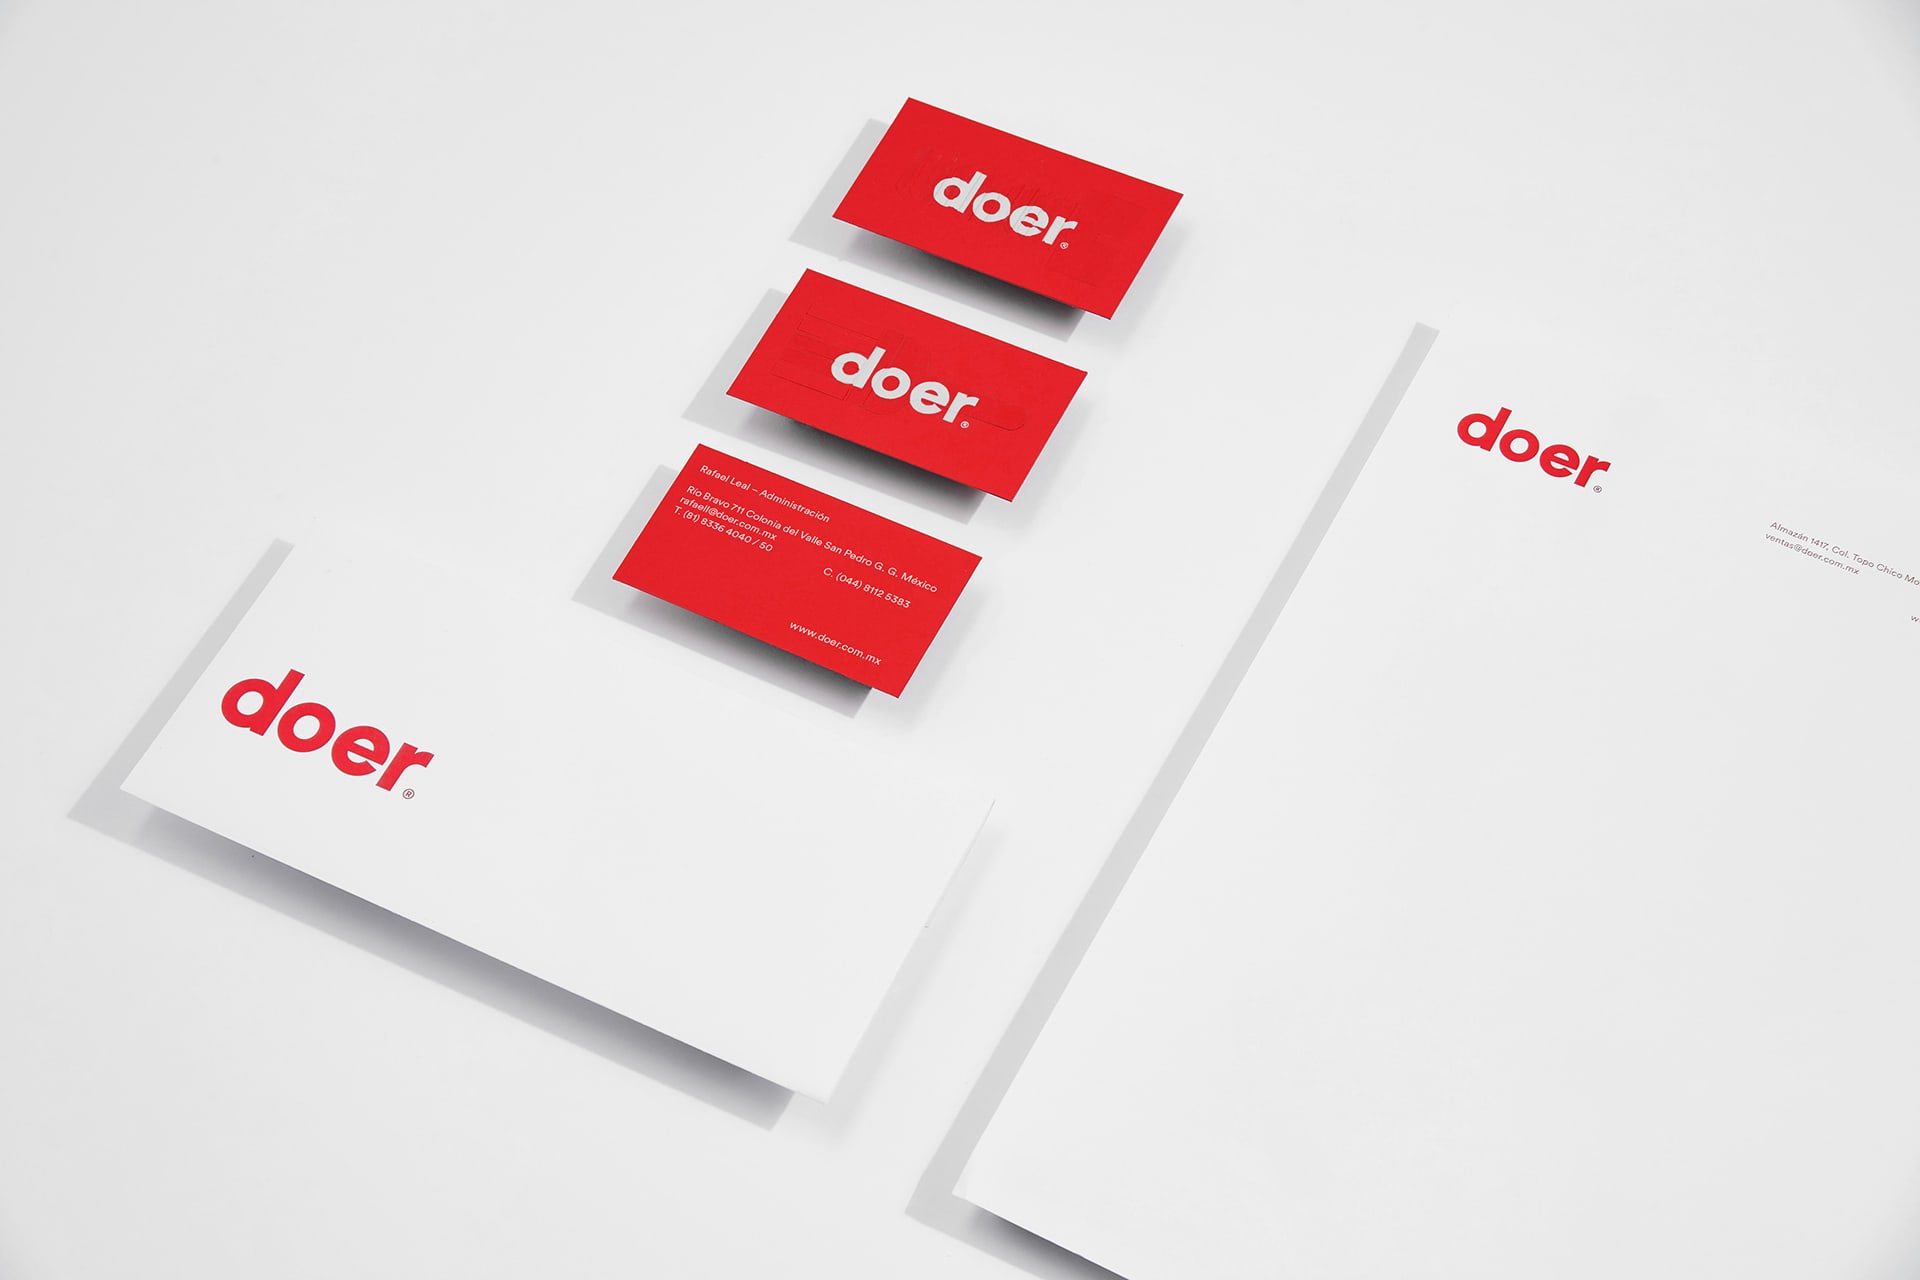 工具制造品牌Doer视觉VI设计